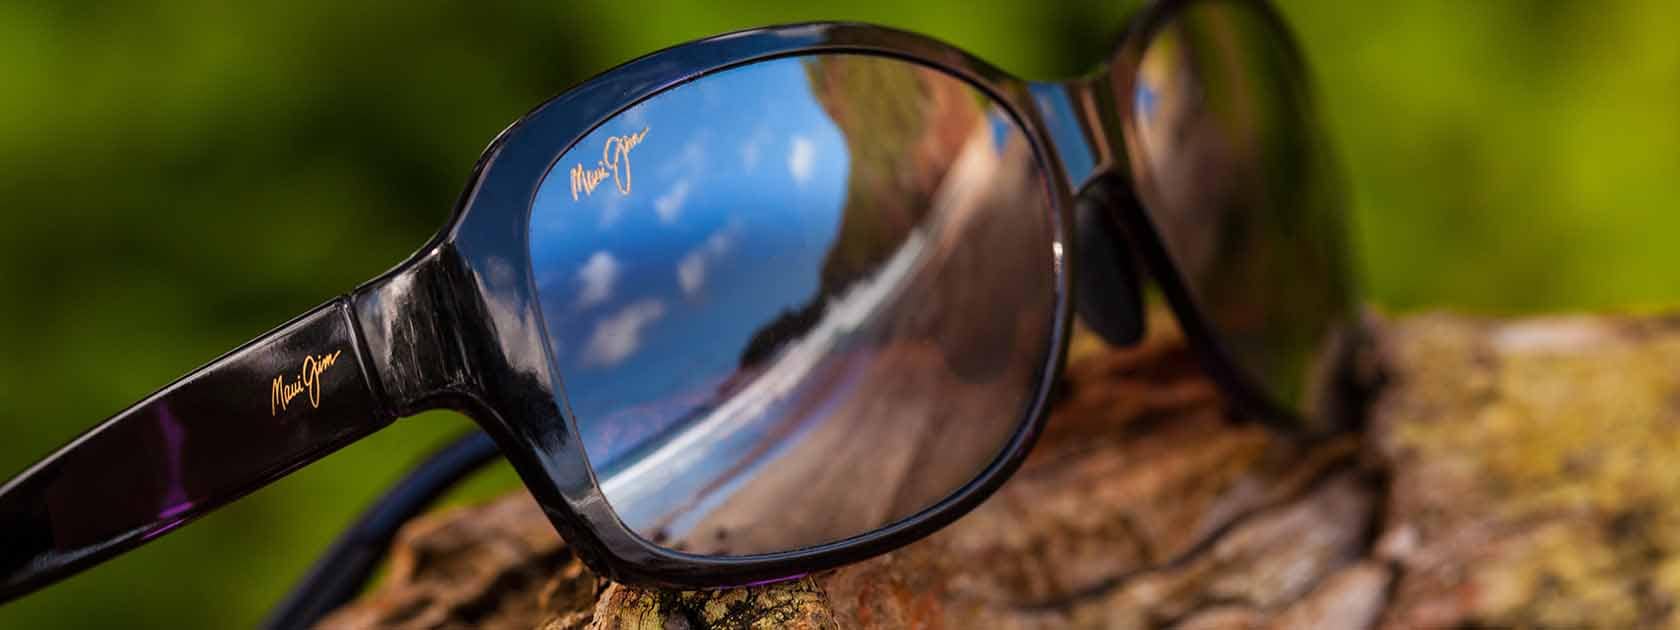 occhiali da sole con montatura nera e riflessi di cielo sulle lenti mostrati su legno